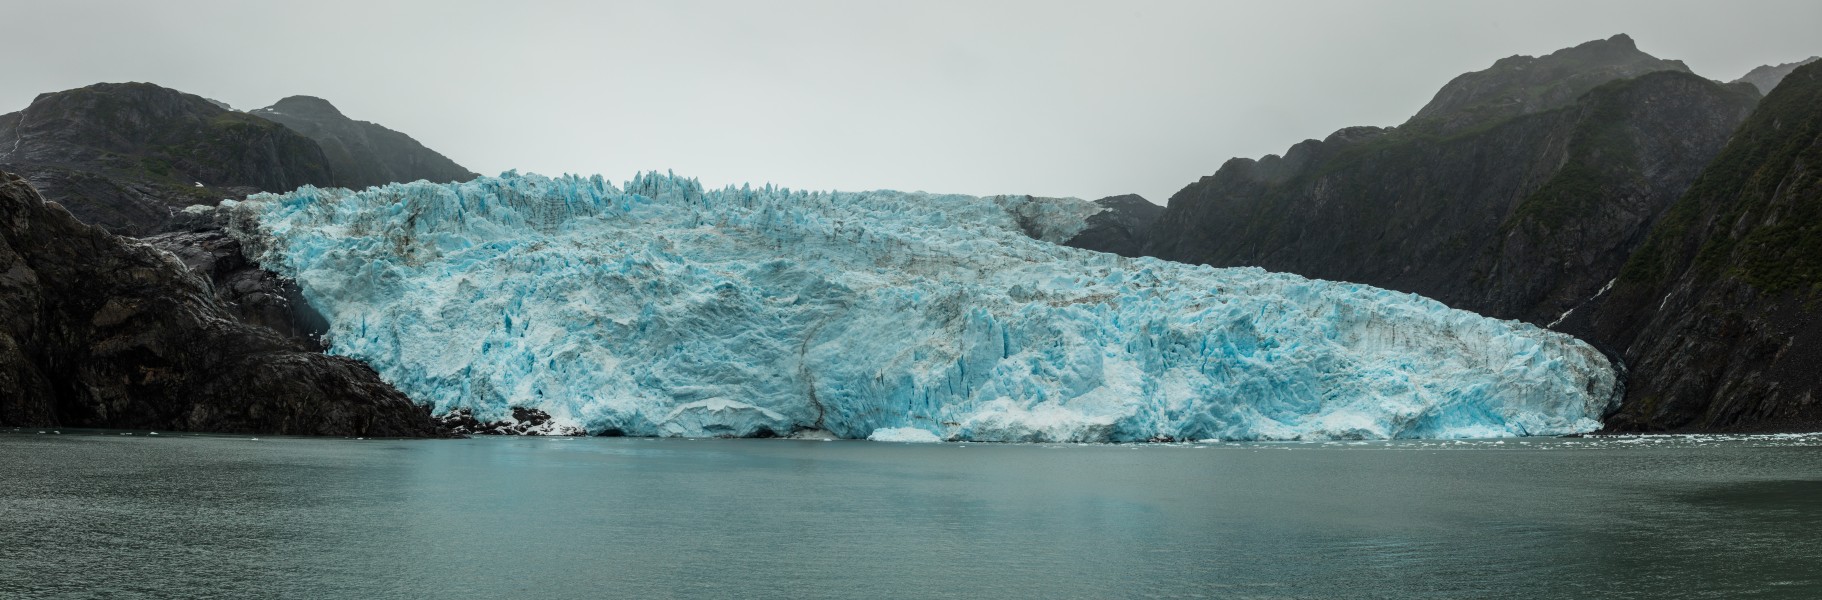 Glaciar de Aialik, Bahía de Aialik, Seward, Alaska, Estados Unidos, 2017-08-21, DD 54-56 PAN